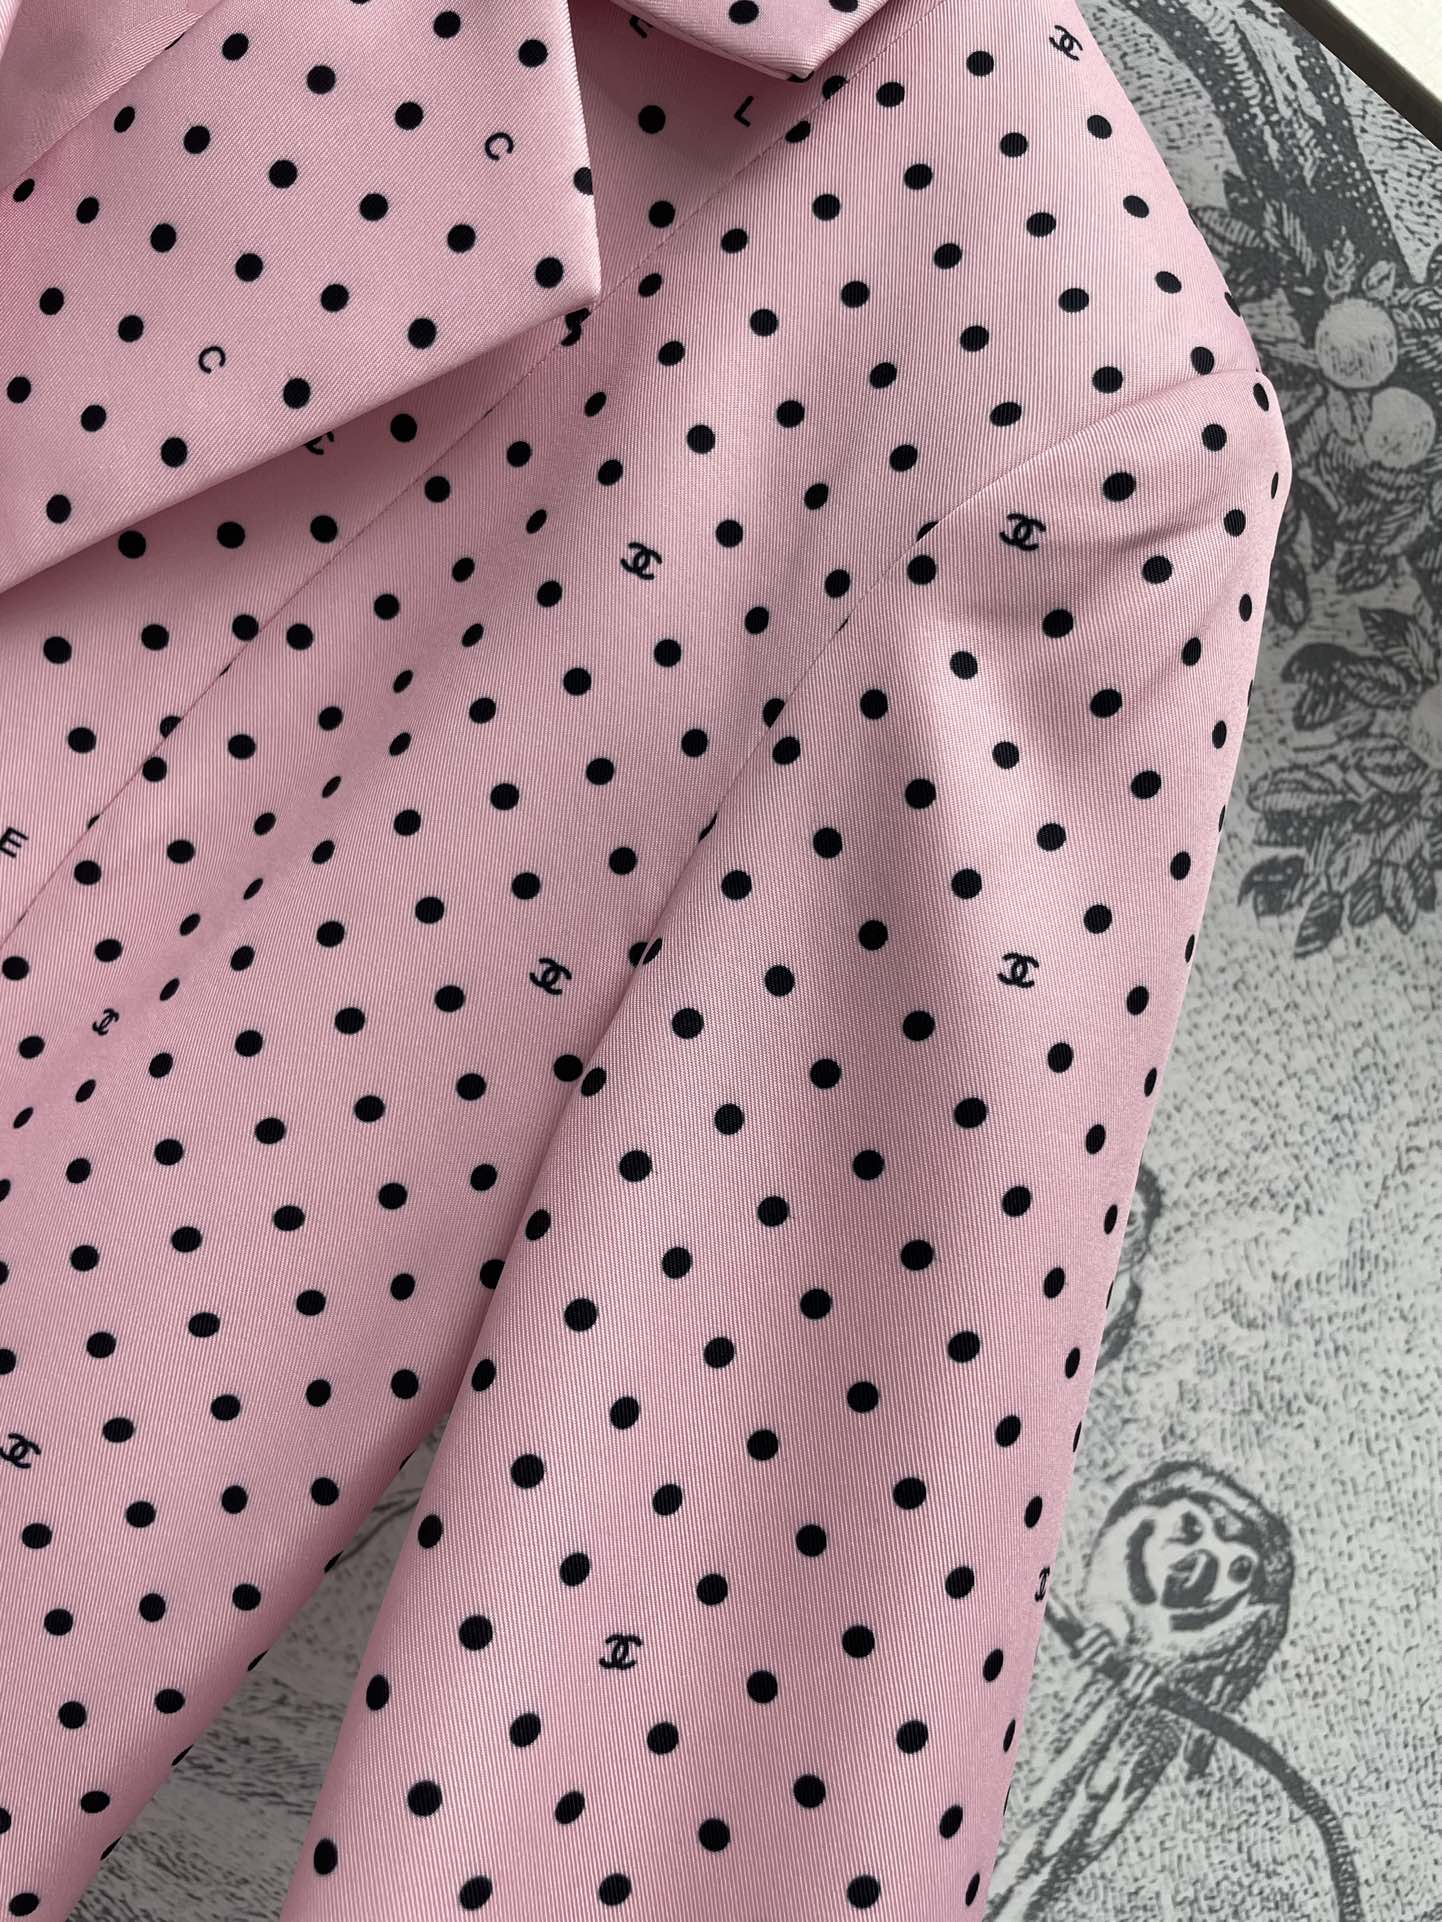 小香24春夏粉色系波点长西装外套西装的外型恰到好处的垫肩设计显得人特别有精神复古波点元素独特的灵动与活波